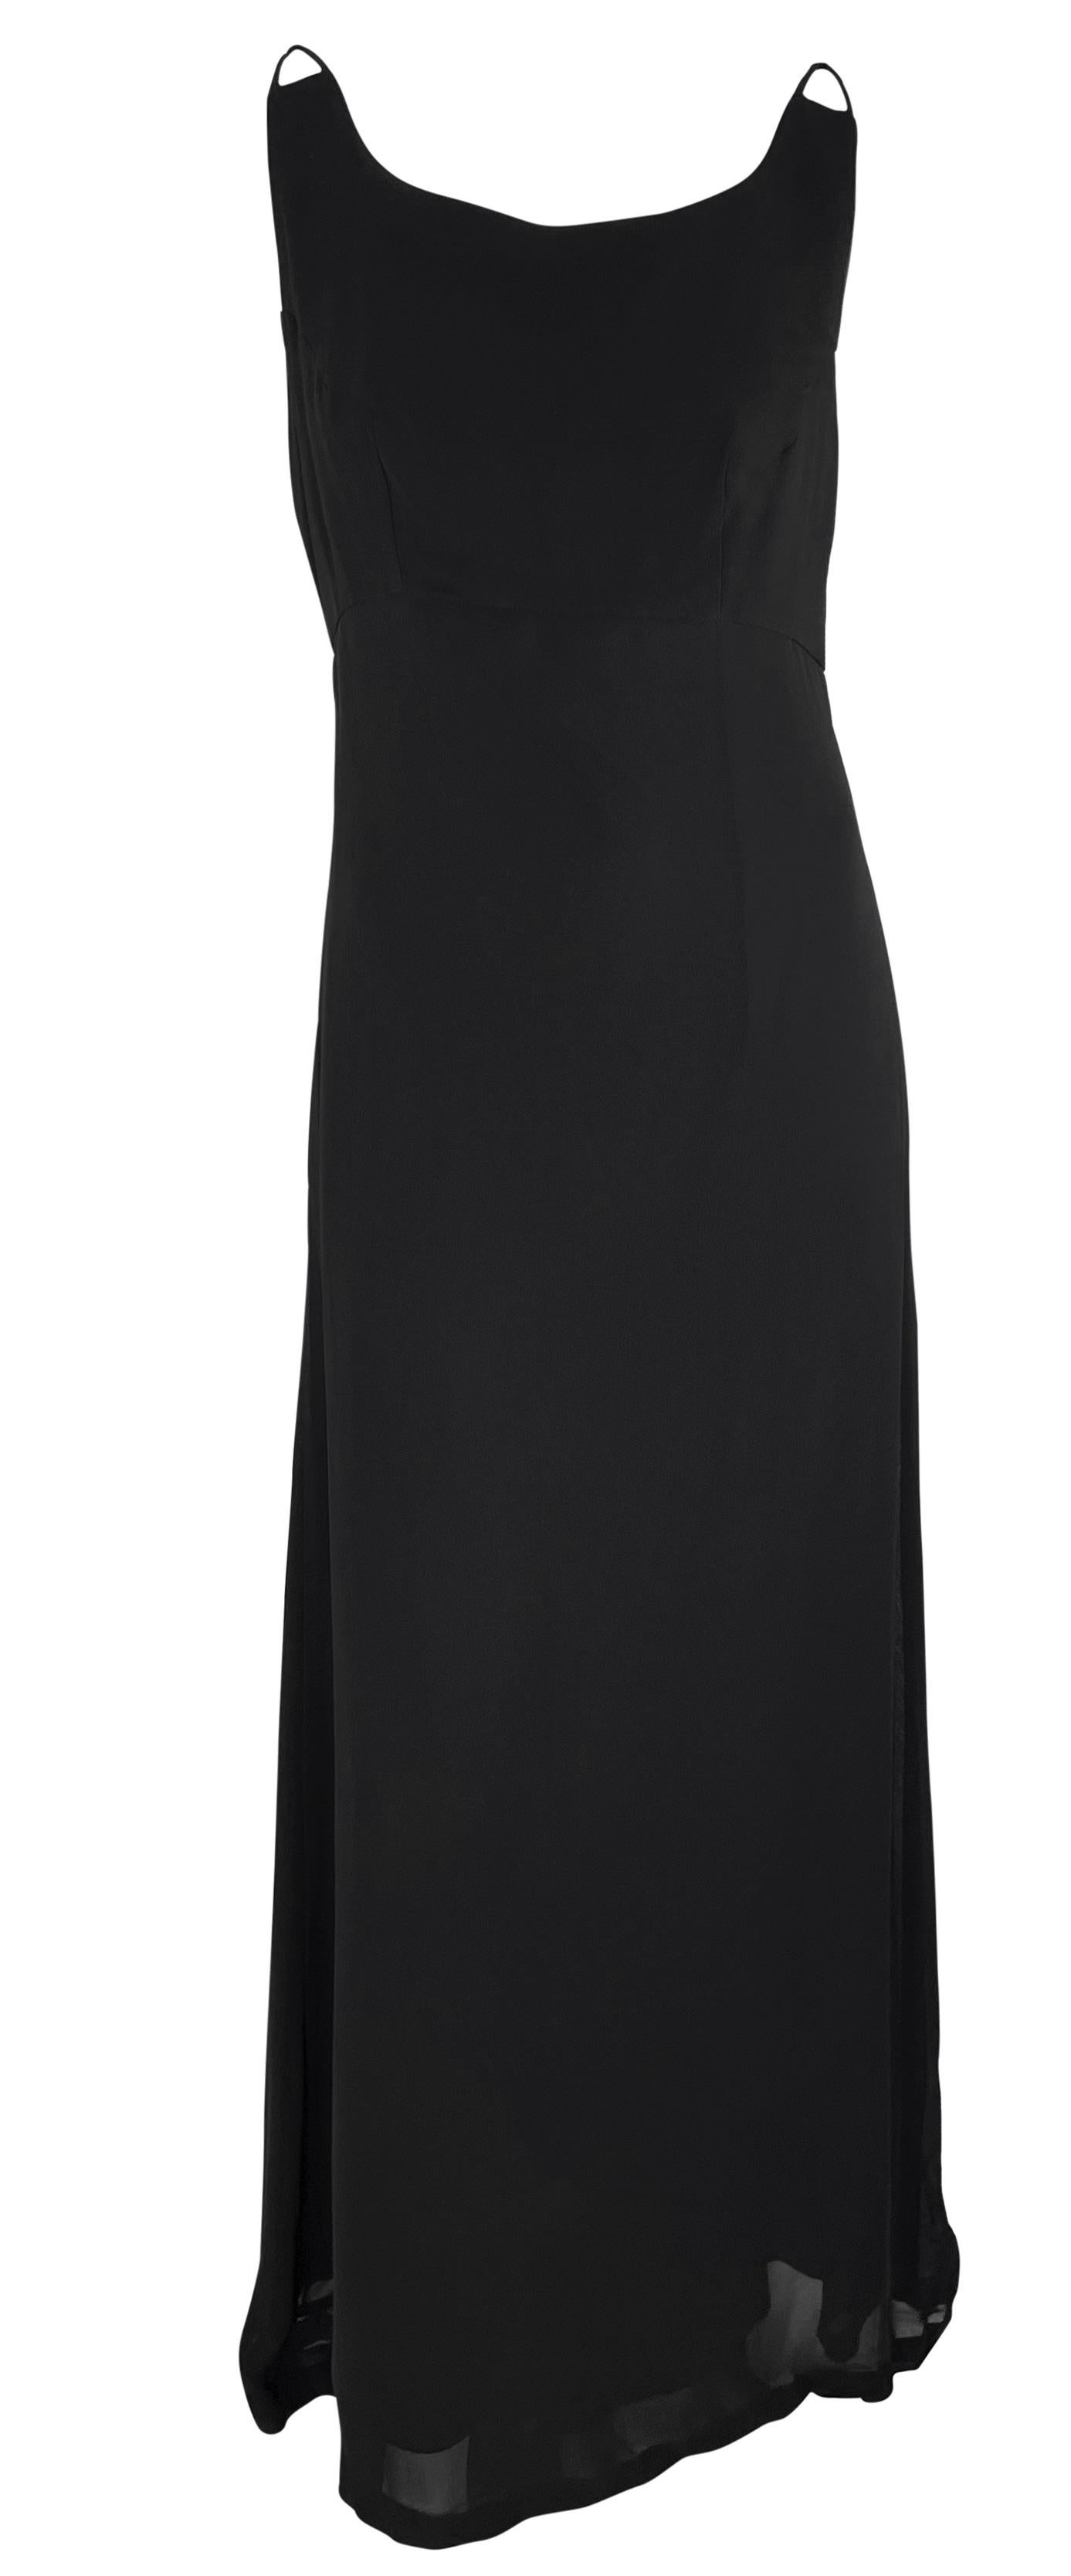 Cette robe noire transparente sans manches Dolce & Gabbana présente une coupe colonne avec une jupe légèrement évasée et est agrémentée d'accents imbriqués au sommet de chaque épaule.   

Mesures approximatives :
Taille - enlevée
Poitrine : 32 -